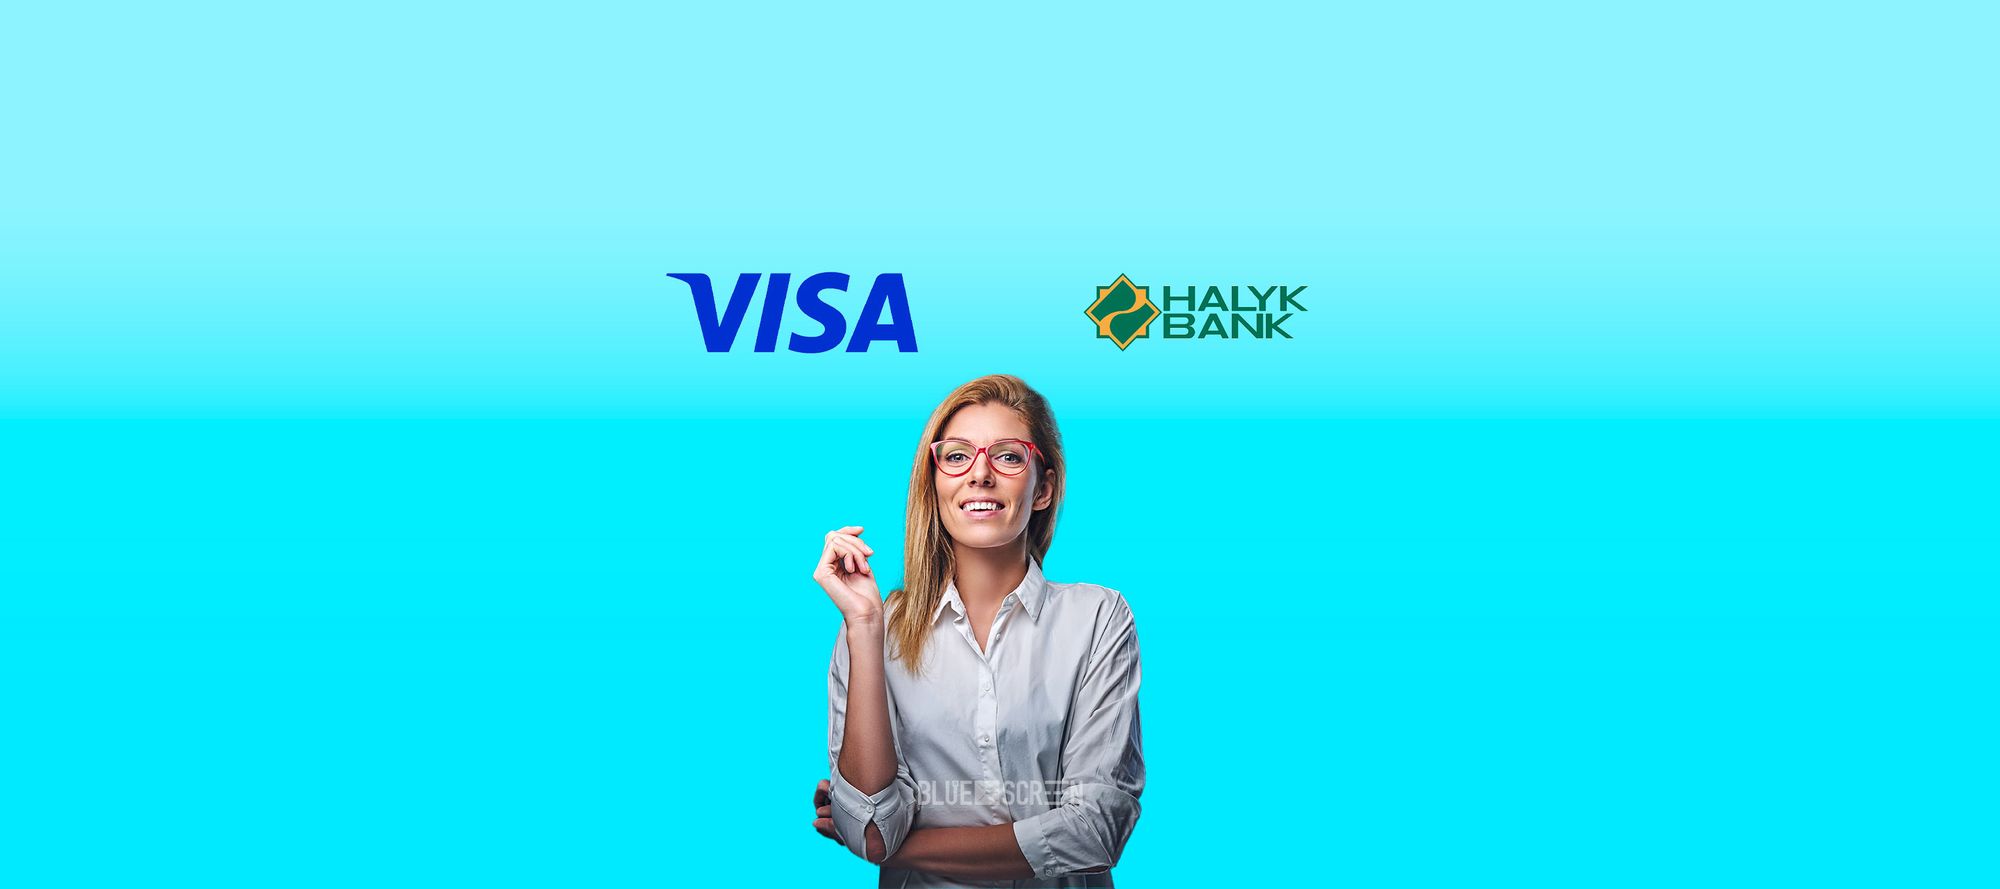 Visa и Halyk Bank запускают марафон «Бизнес-лидерство»